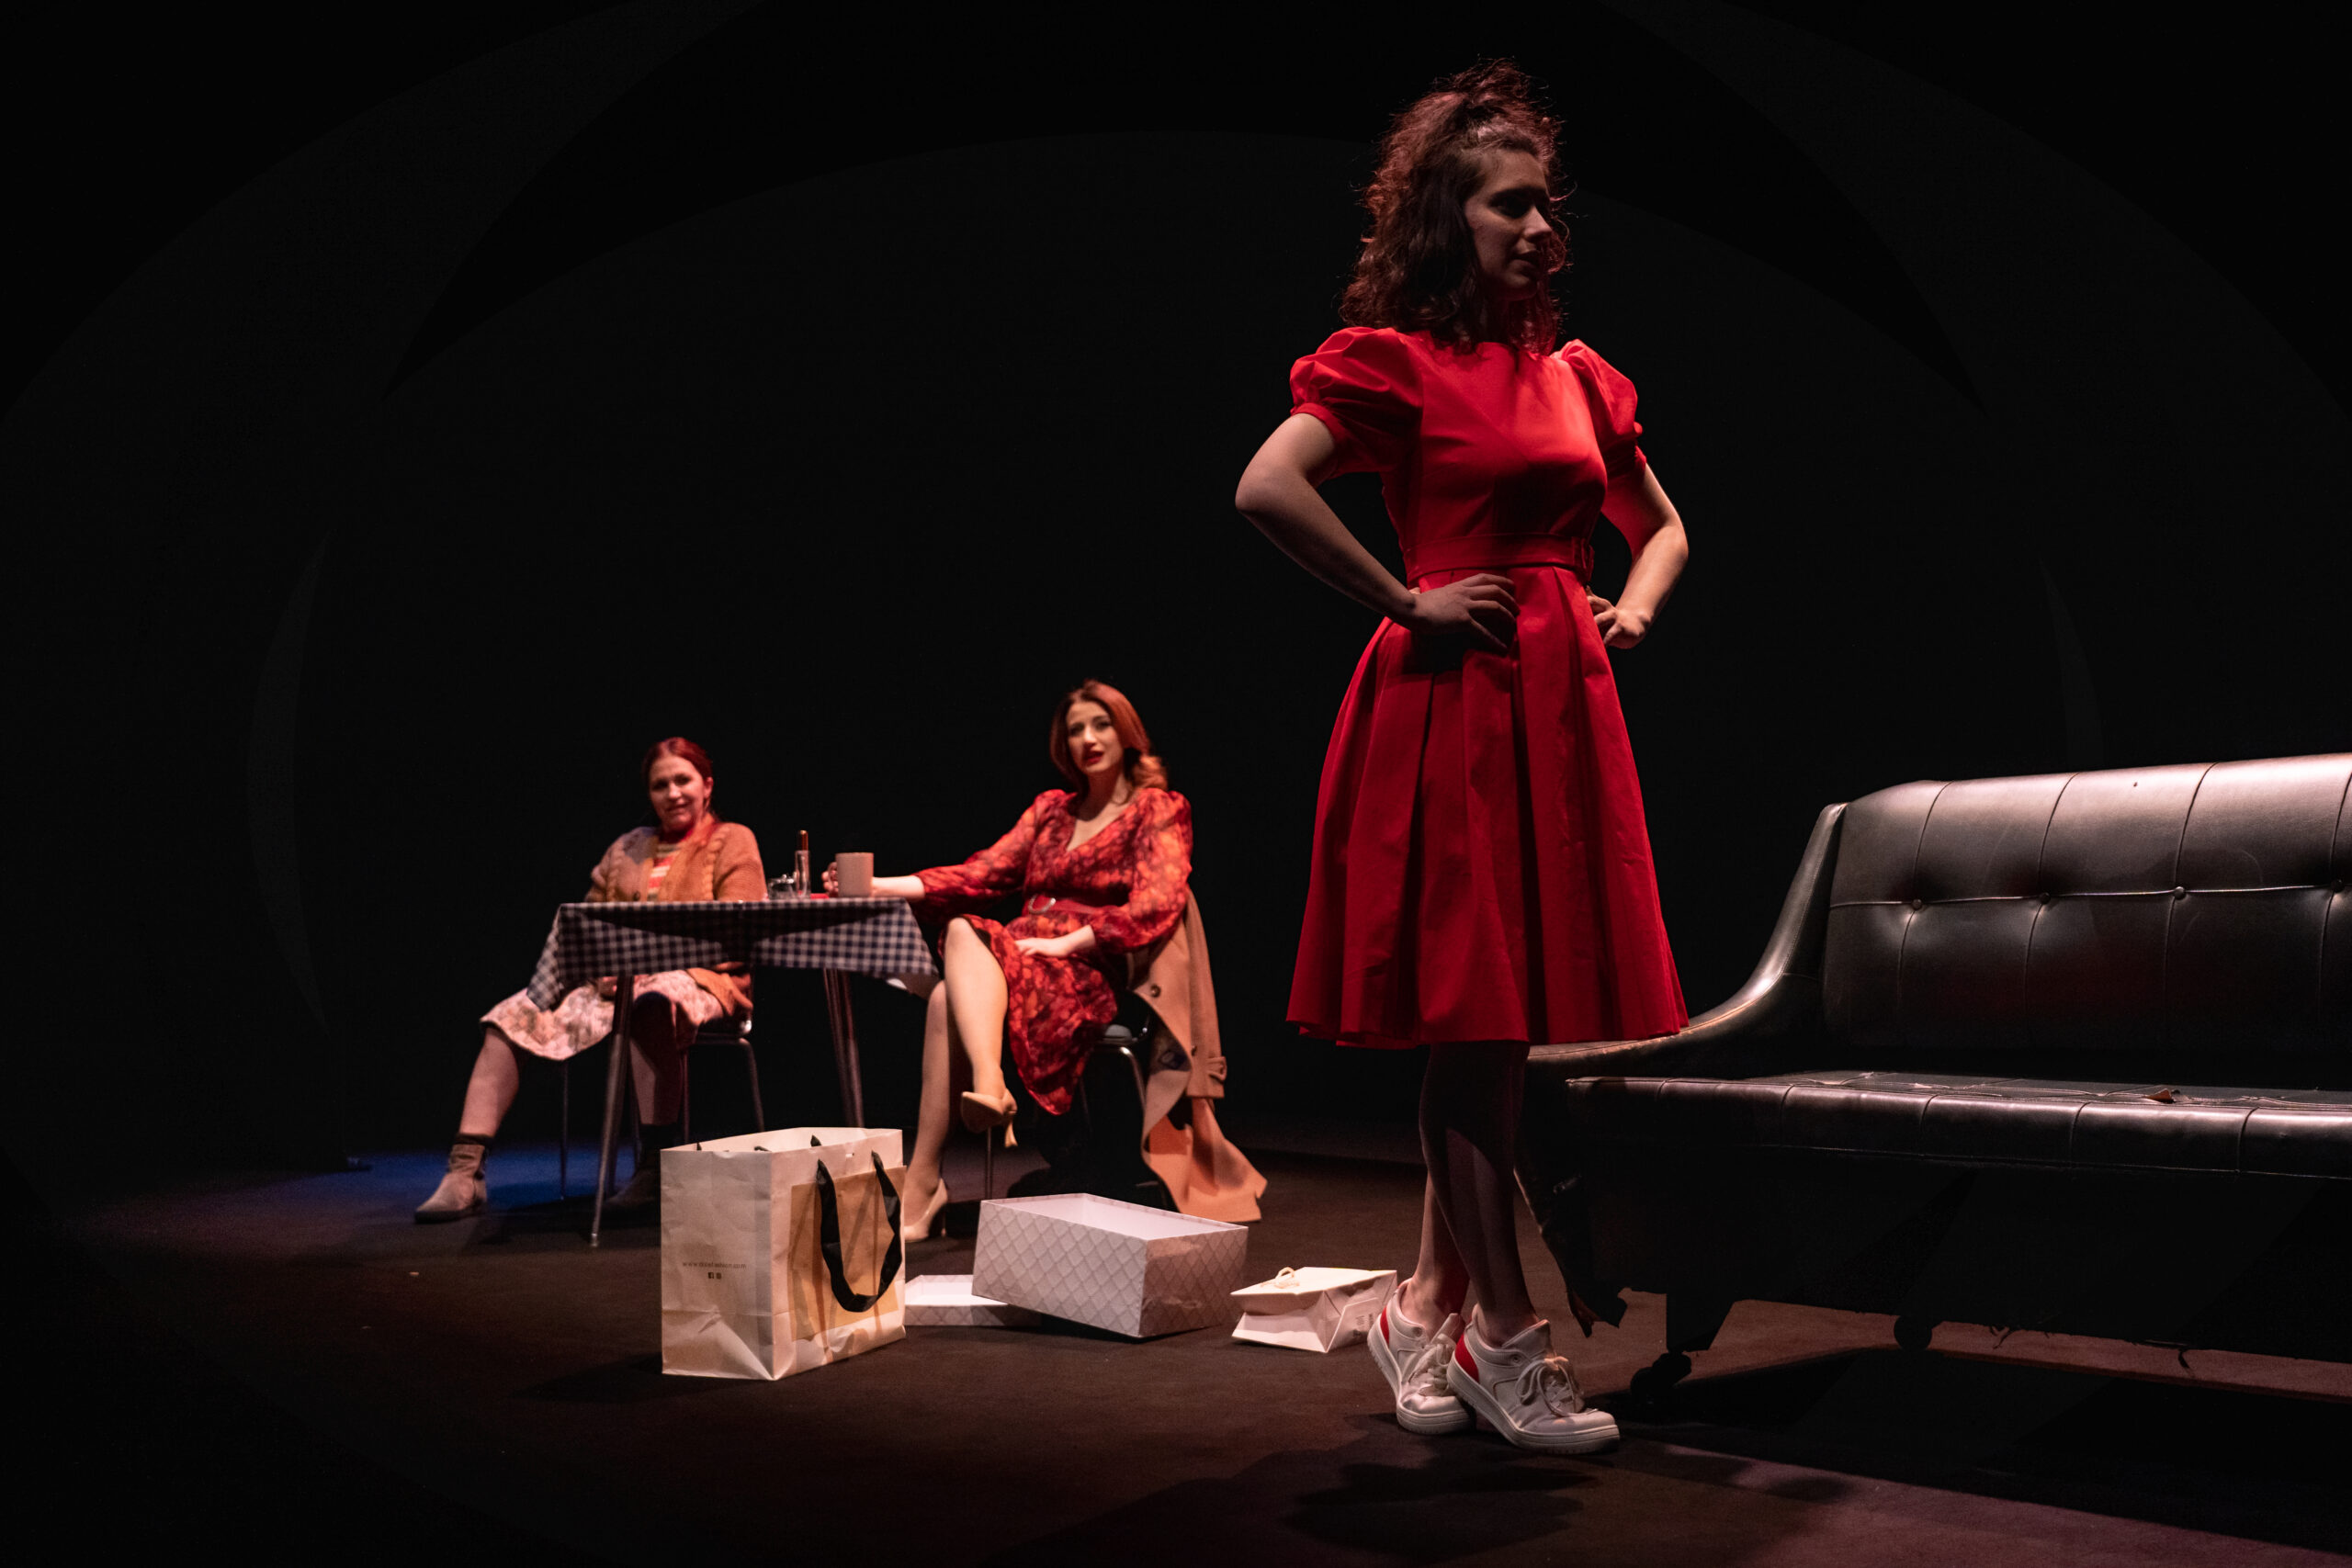 Teatro Carcano: in scena sei spettacoli al femminile